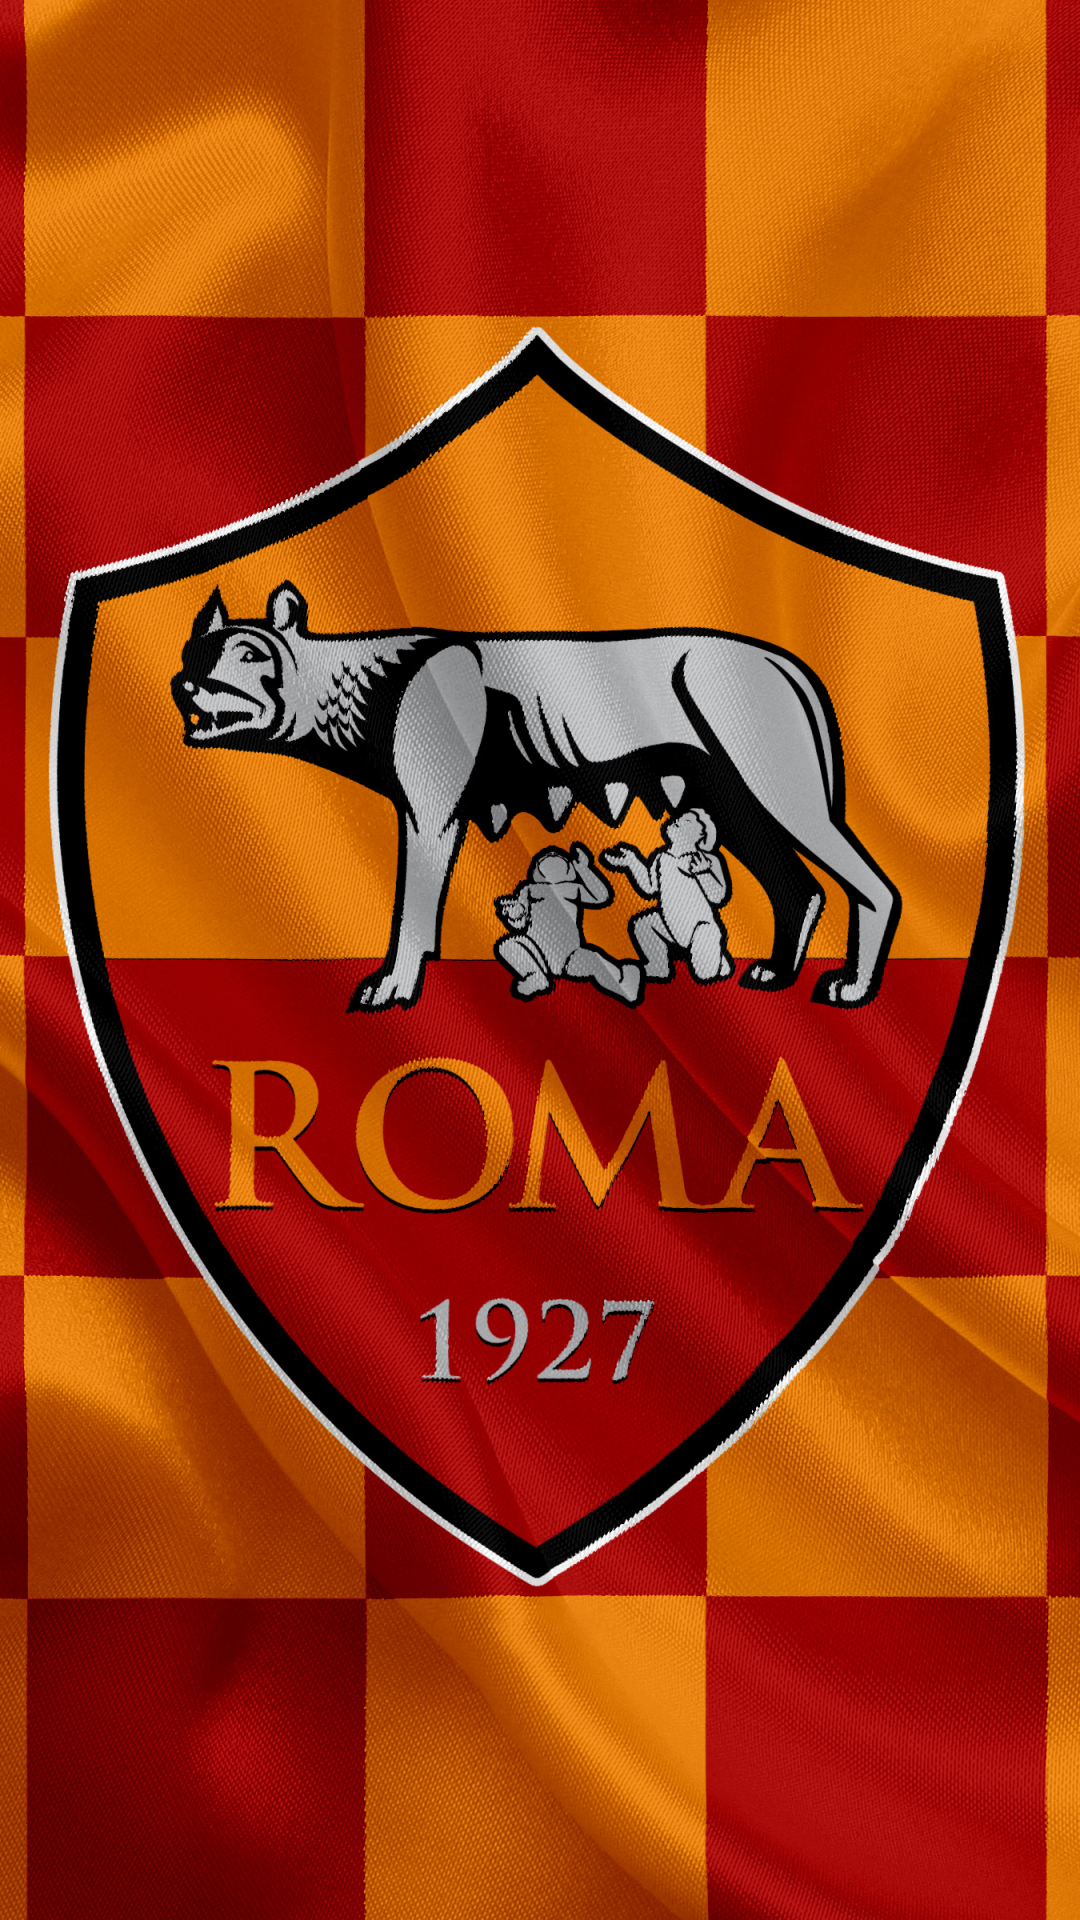 a s roma, sports, soccer, logo